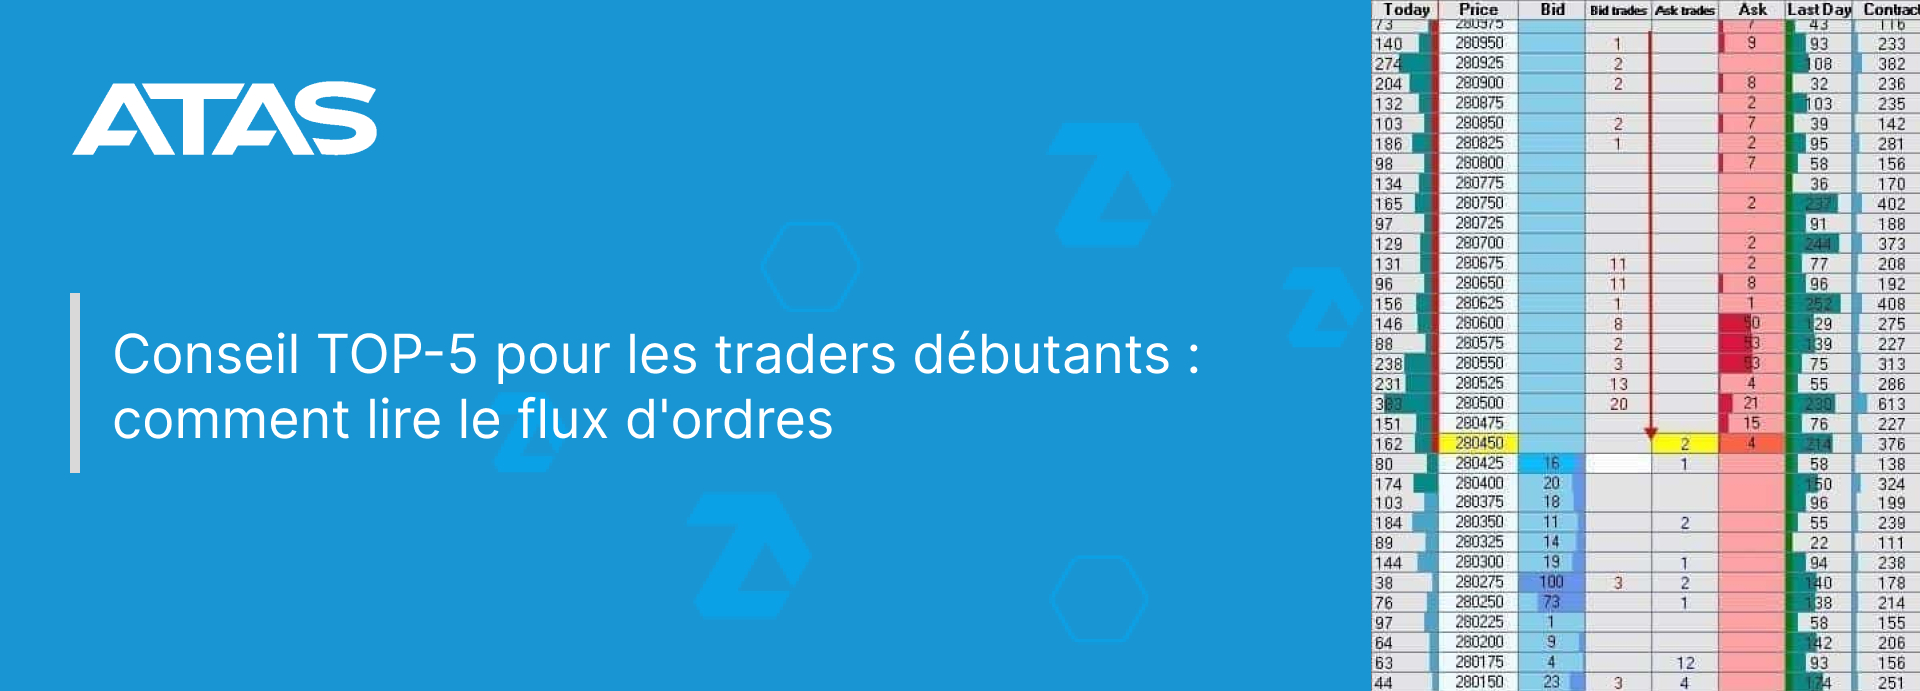 Conseil TOP-5 pour les traders débutants : comment lire le flux d'ordres